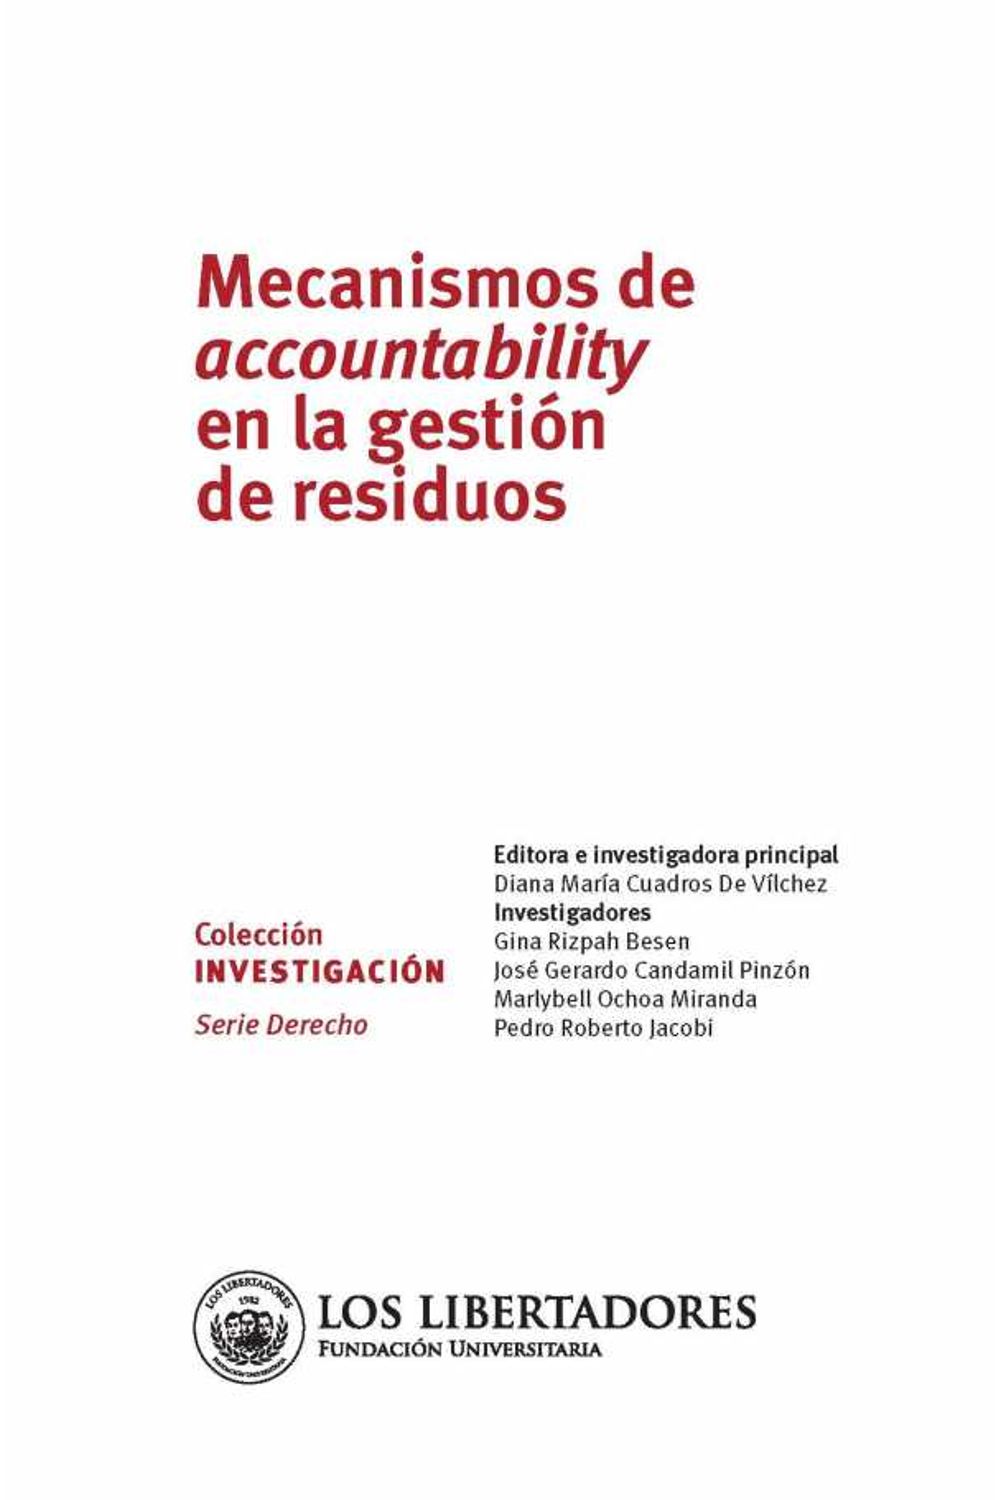 bw-mecanismos-de-accountability-en-la-gestioacuten-de-residuos-editorial-los-libertadores-9789589146859